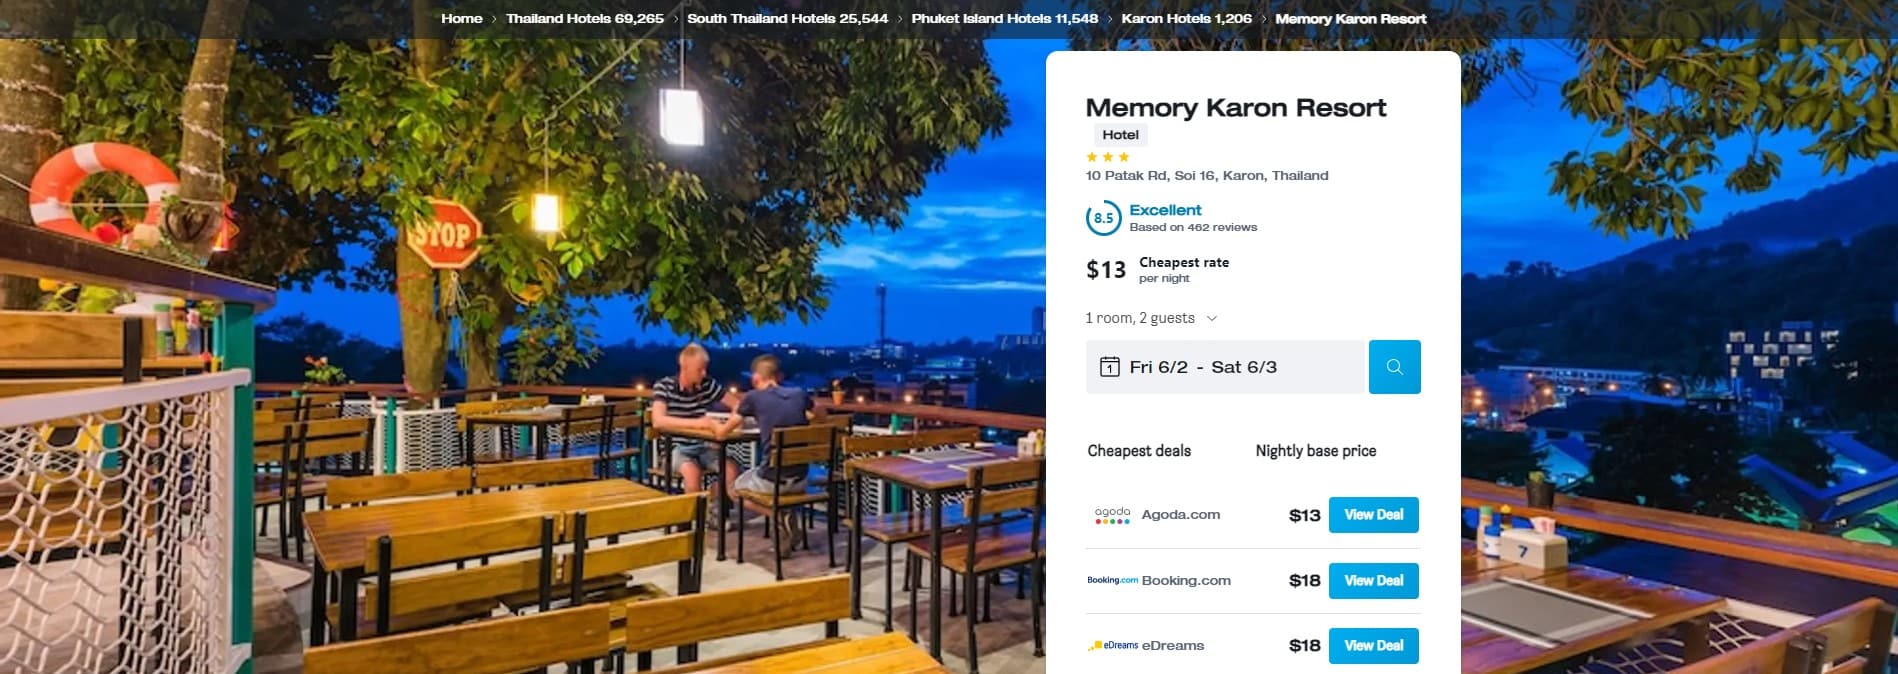 Memory Karon Resort